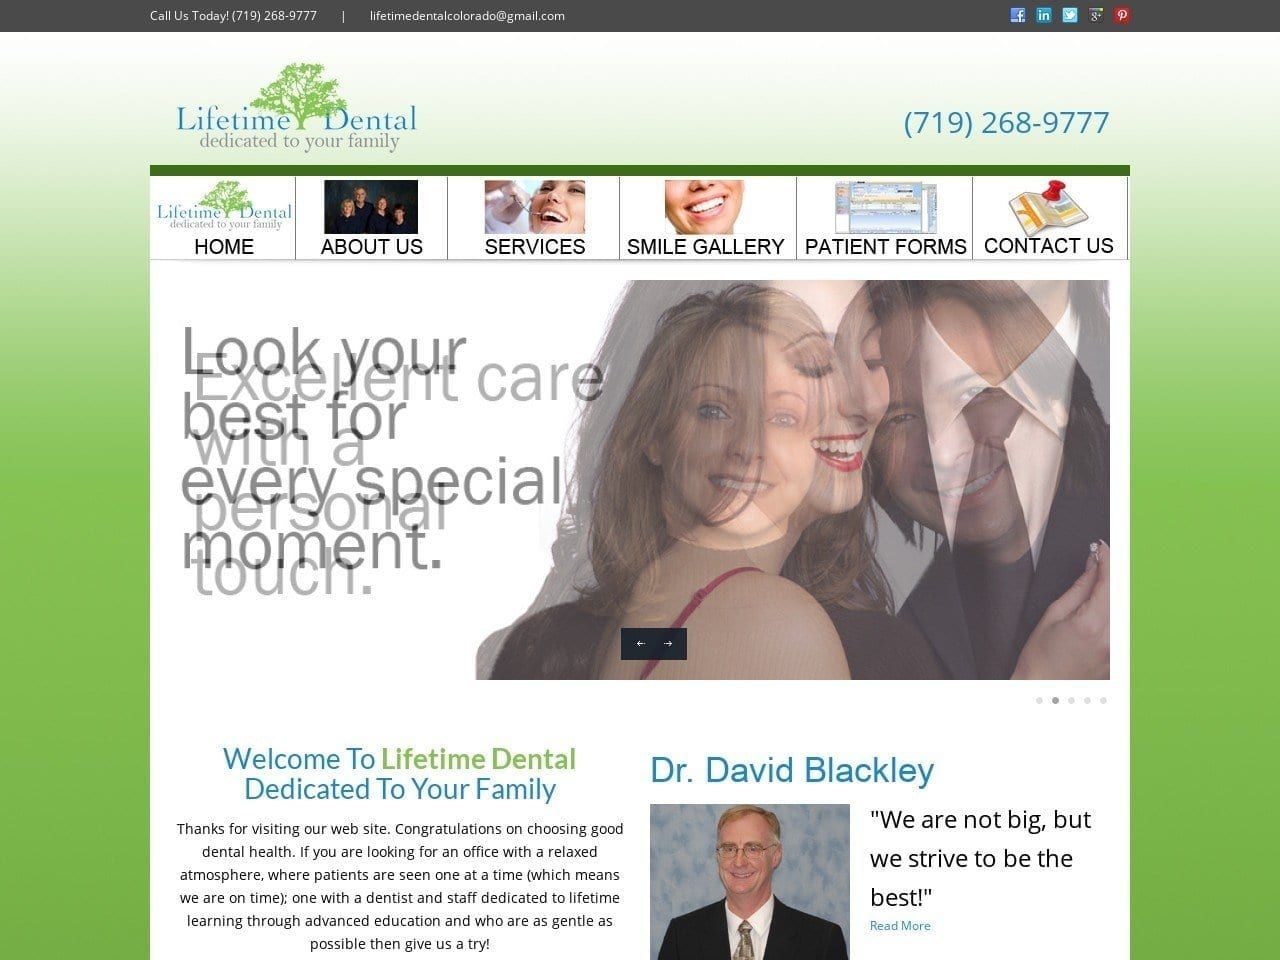 Lifetime Dental Colorado Website Screenshot from lifetimedentalcolorado.com